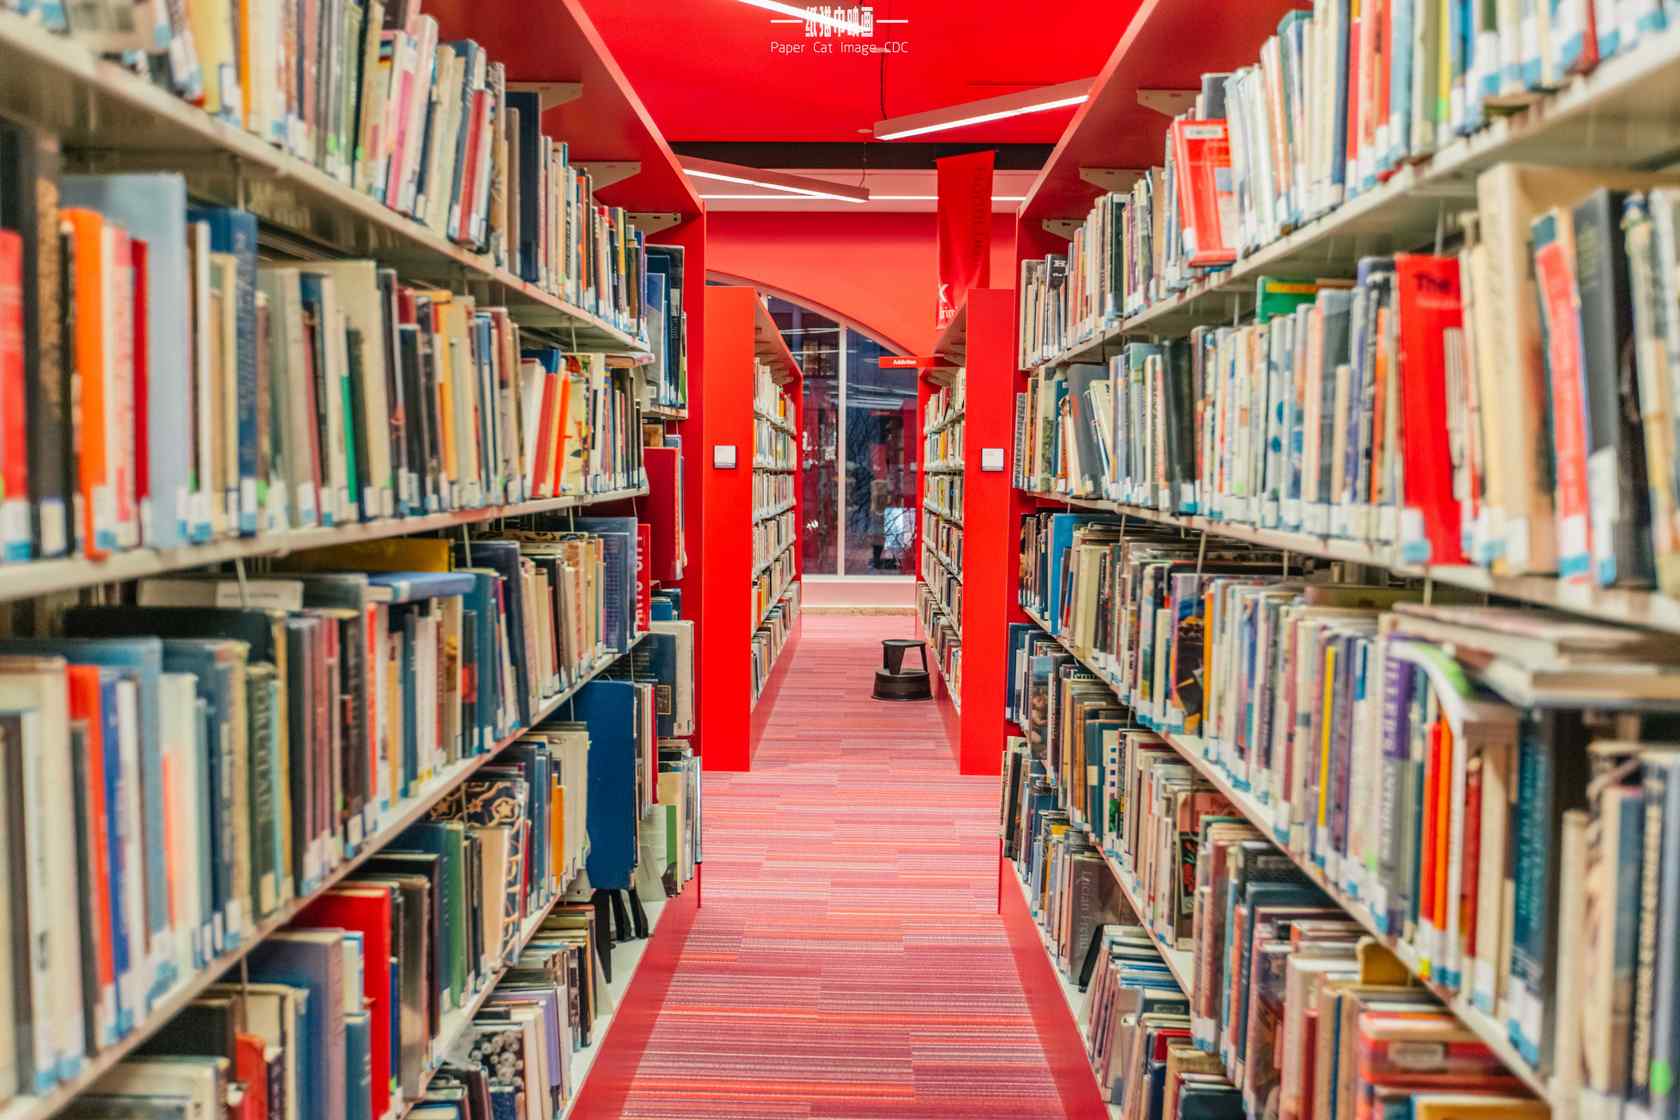 图书馆红色设计桌面壁纸